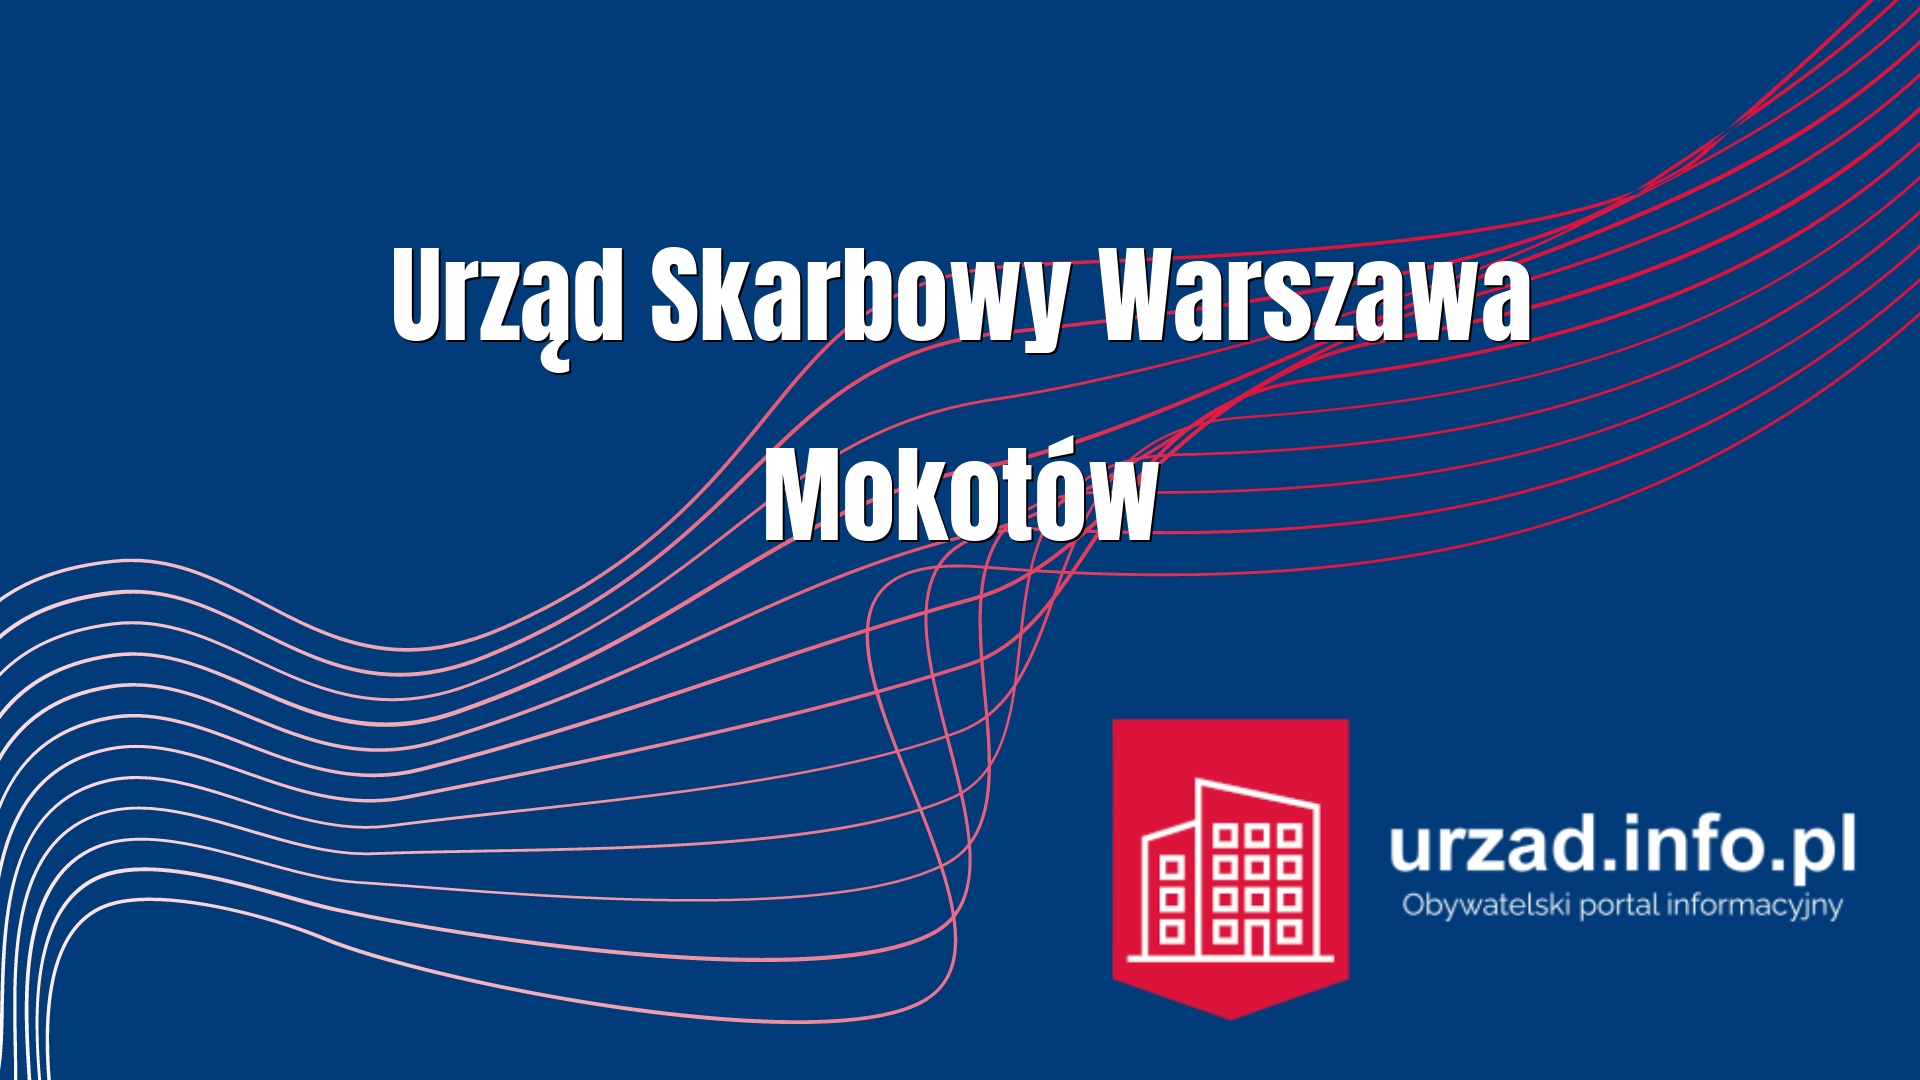 Urząd Skarbowy Warszawa Mokotów